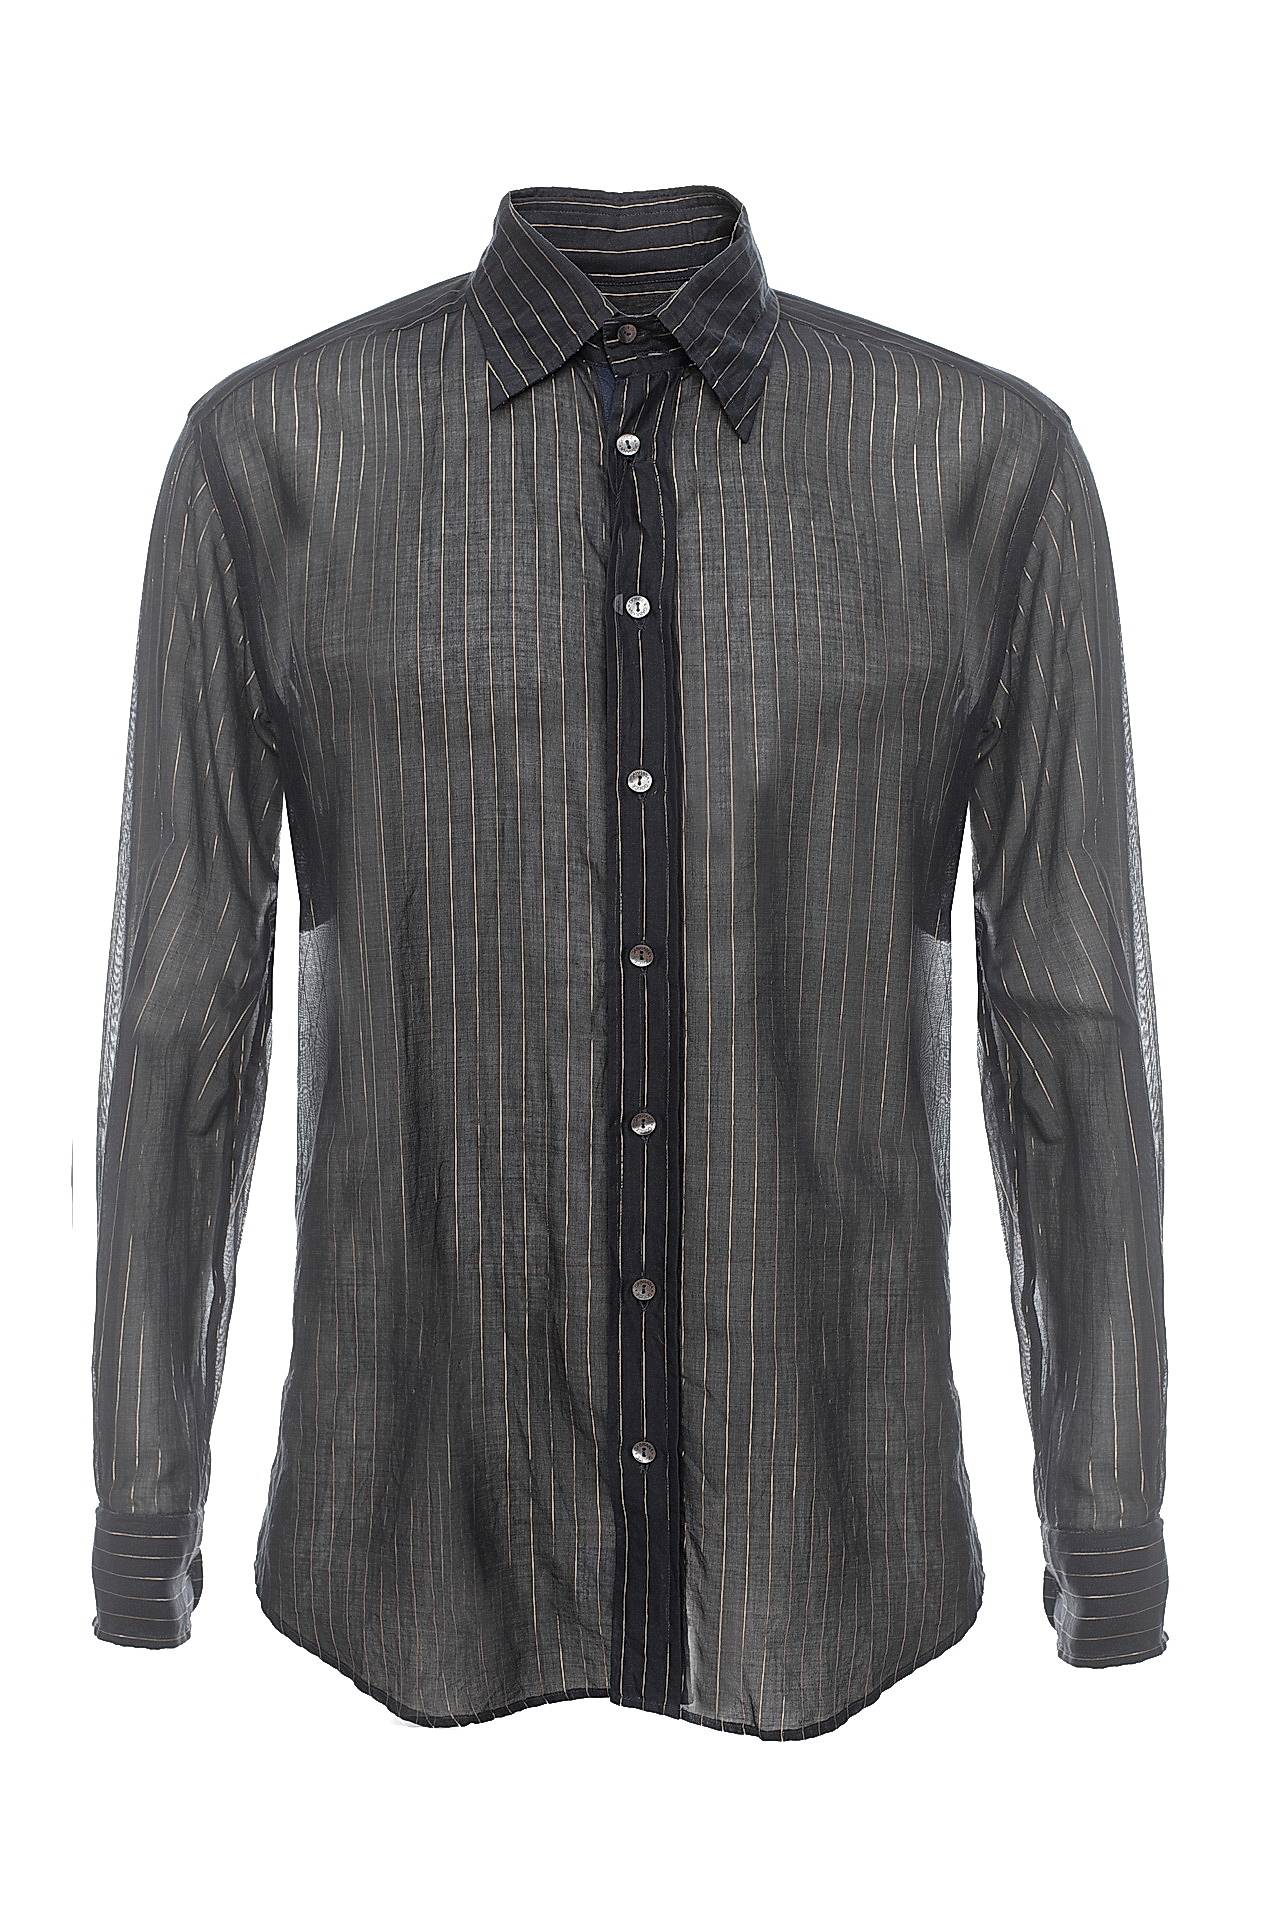 Одежда мужская Рубашка DOLCE & GABBANA (G5120TFB5A6/01). Купить за 8850 руб.